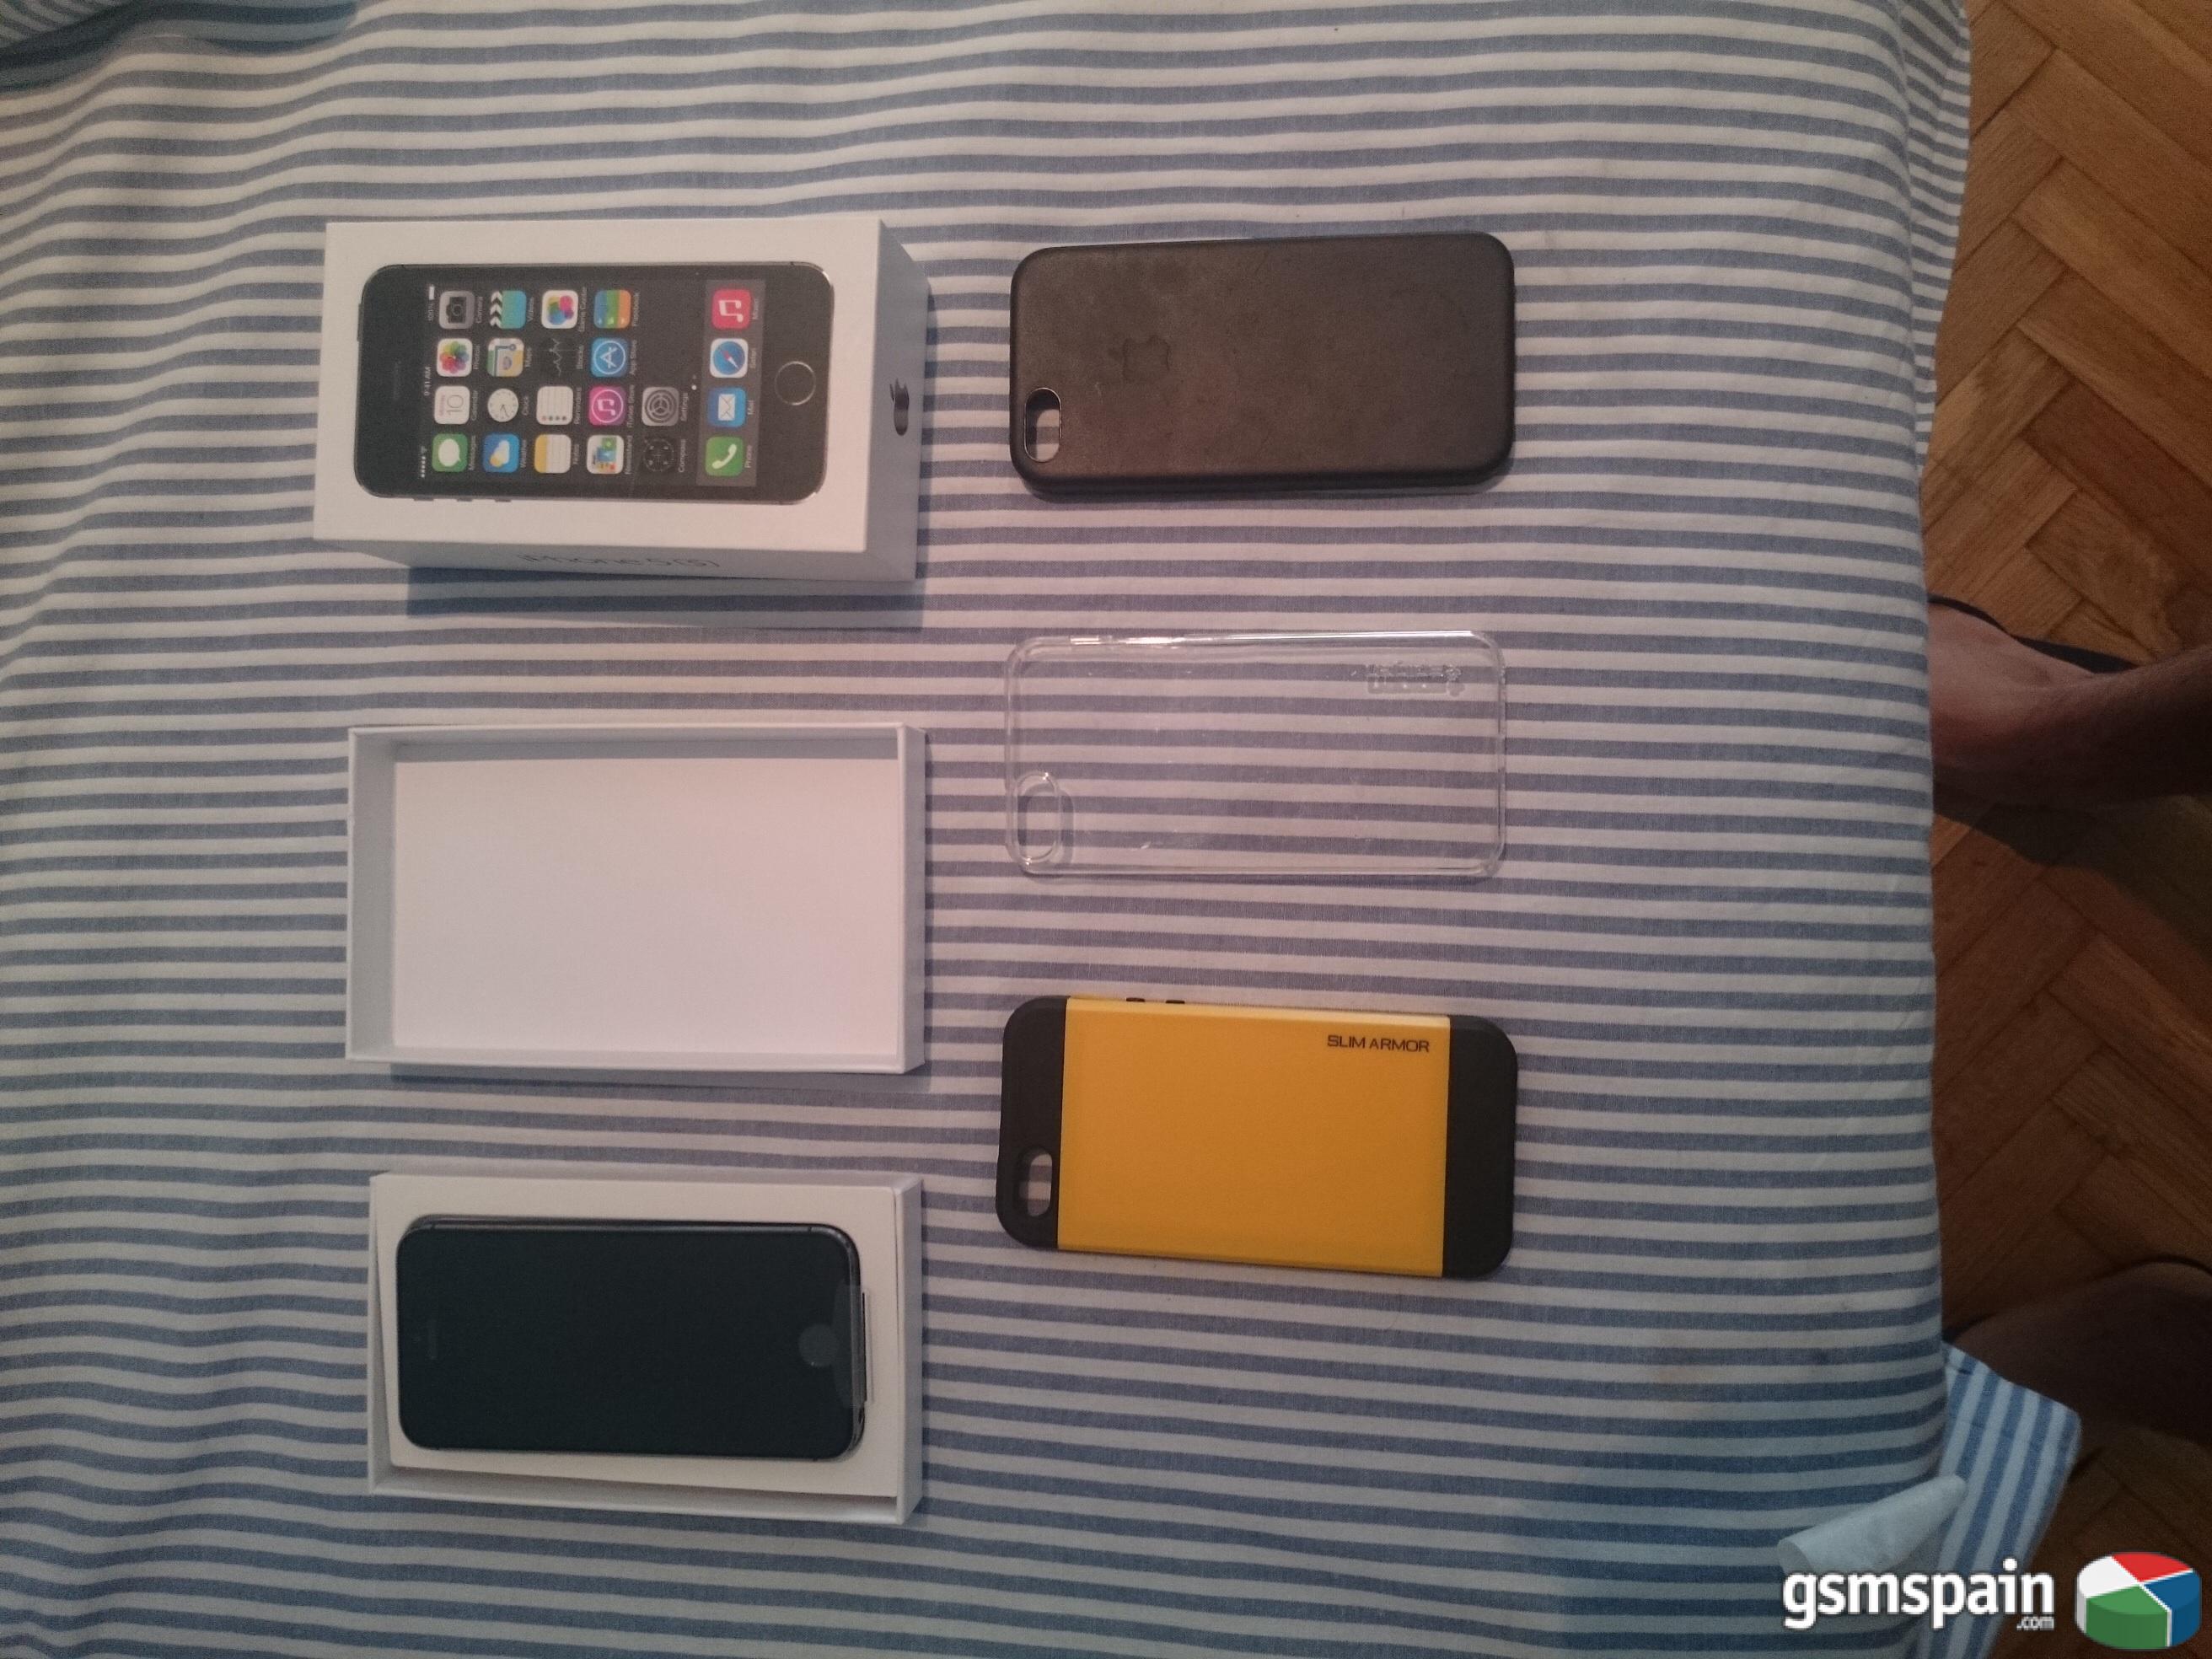 [VENDO] Iphone 5s 16 gb gris espacial + regalo de funda oficial